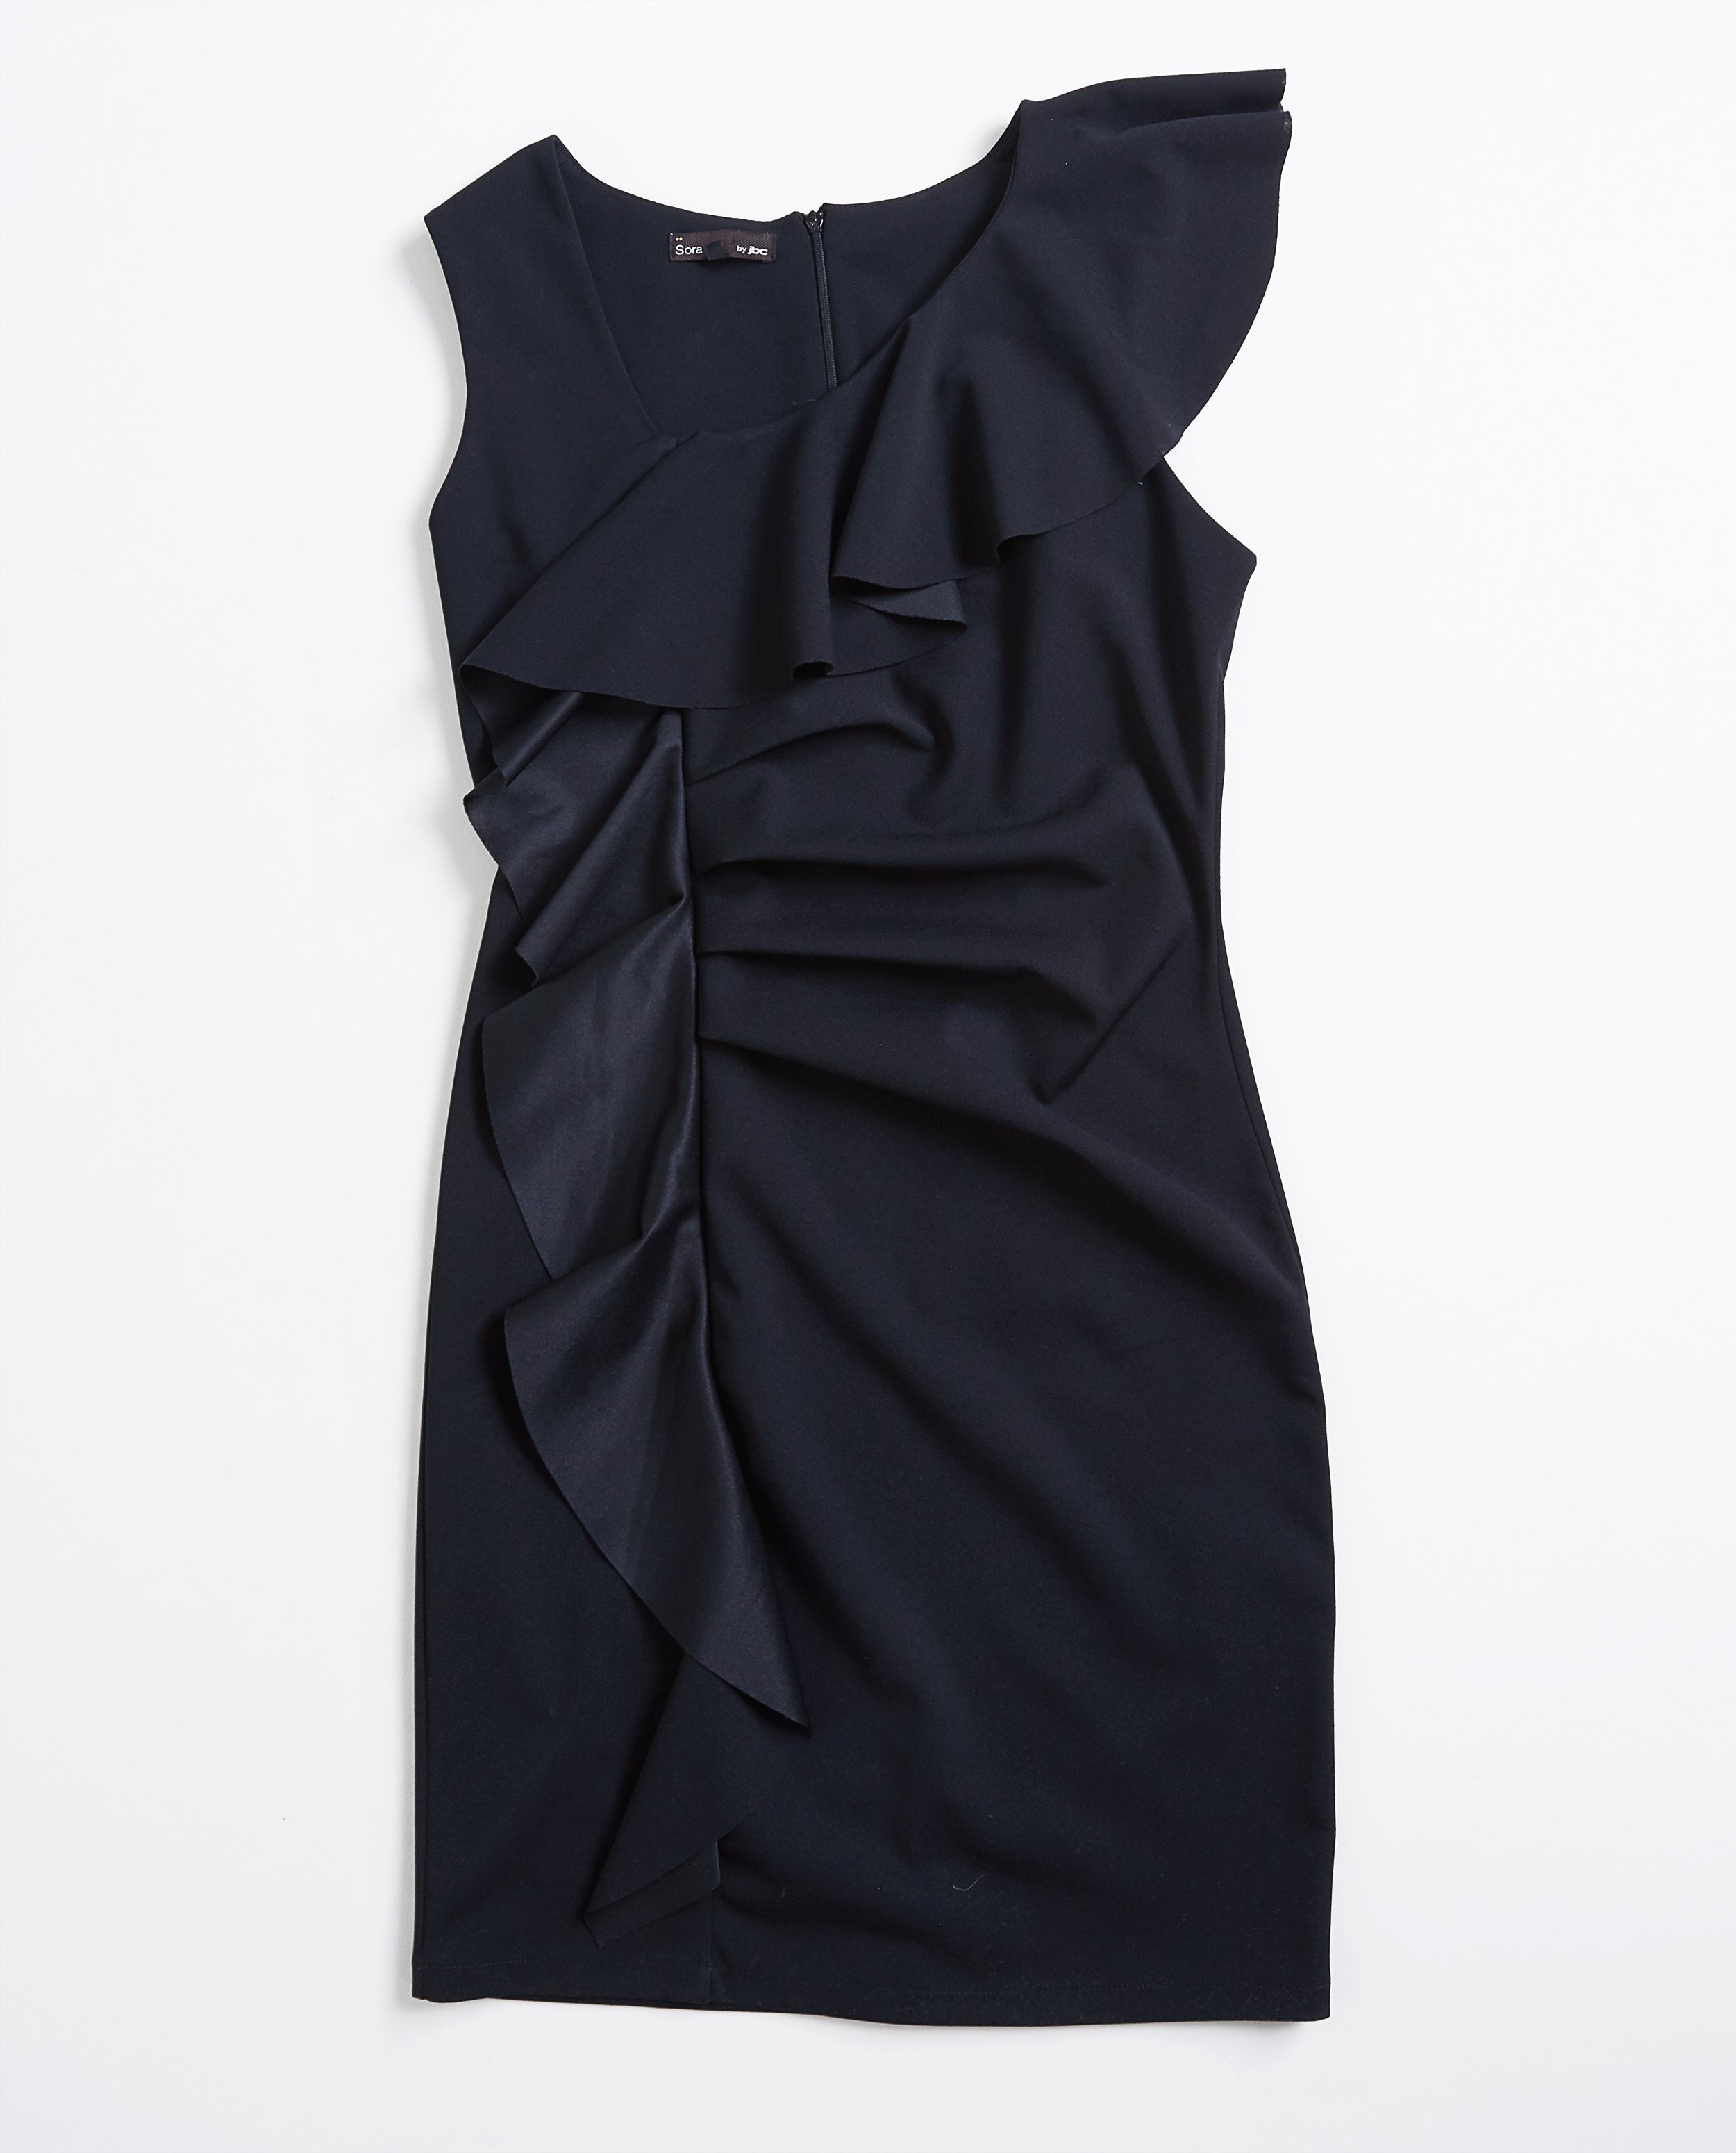 Kleedjes - Zwarte jurk met volants